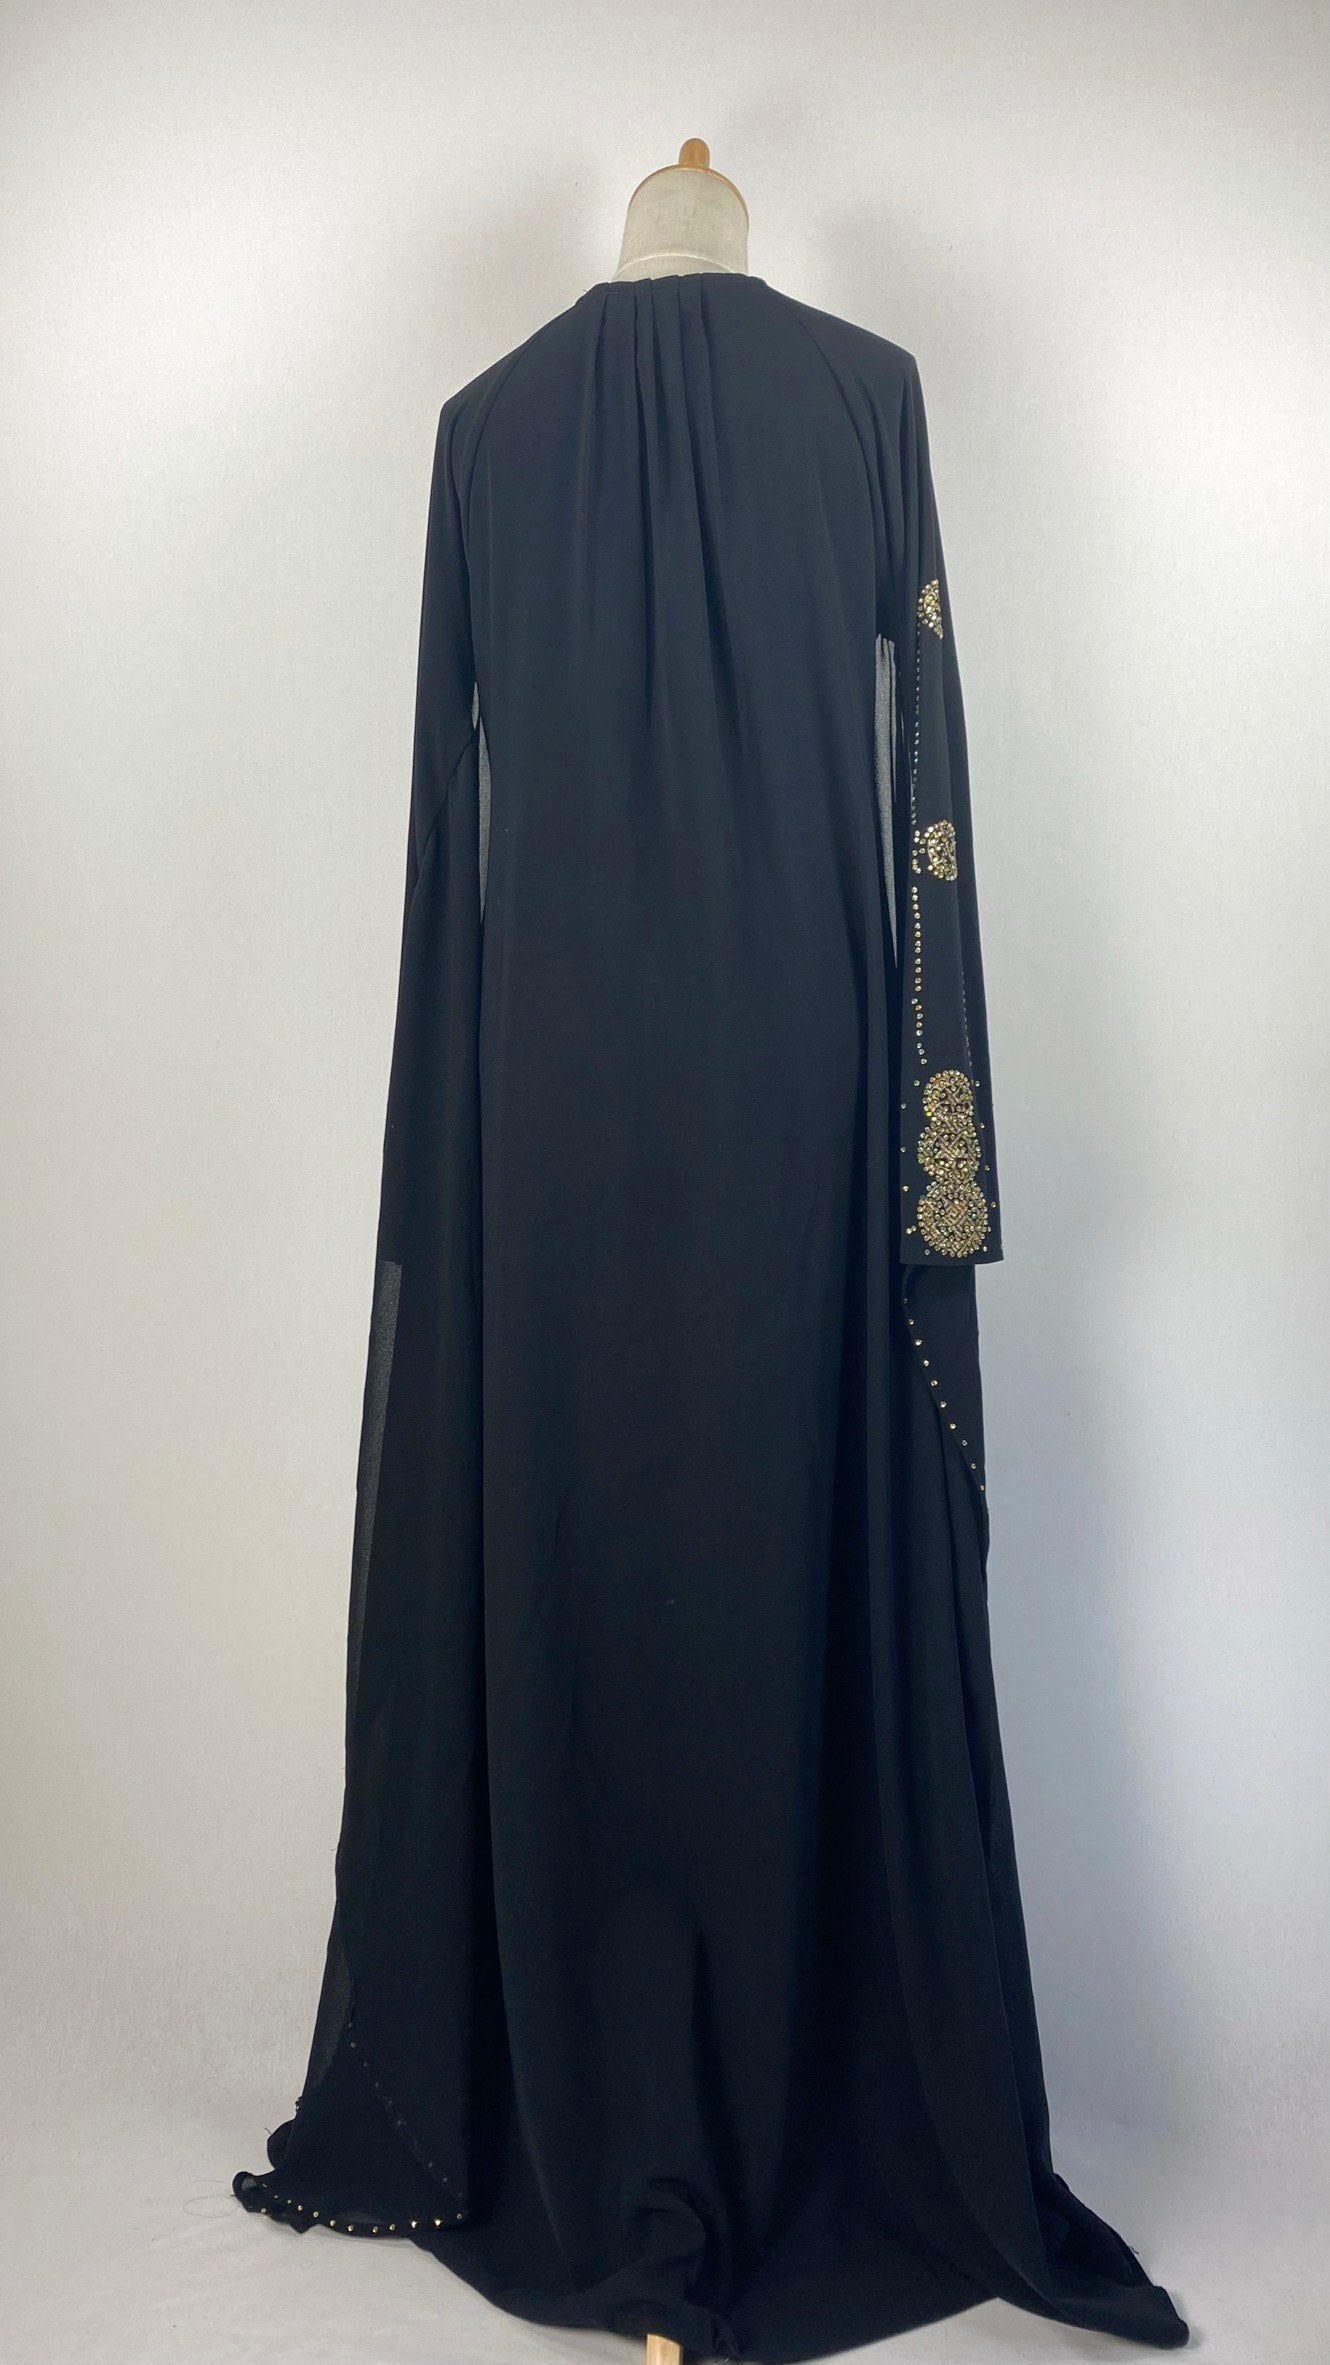 Long Sleeve Batwing Closed Abaya, Black and Gold